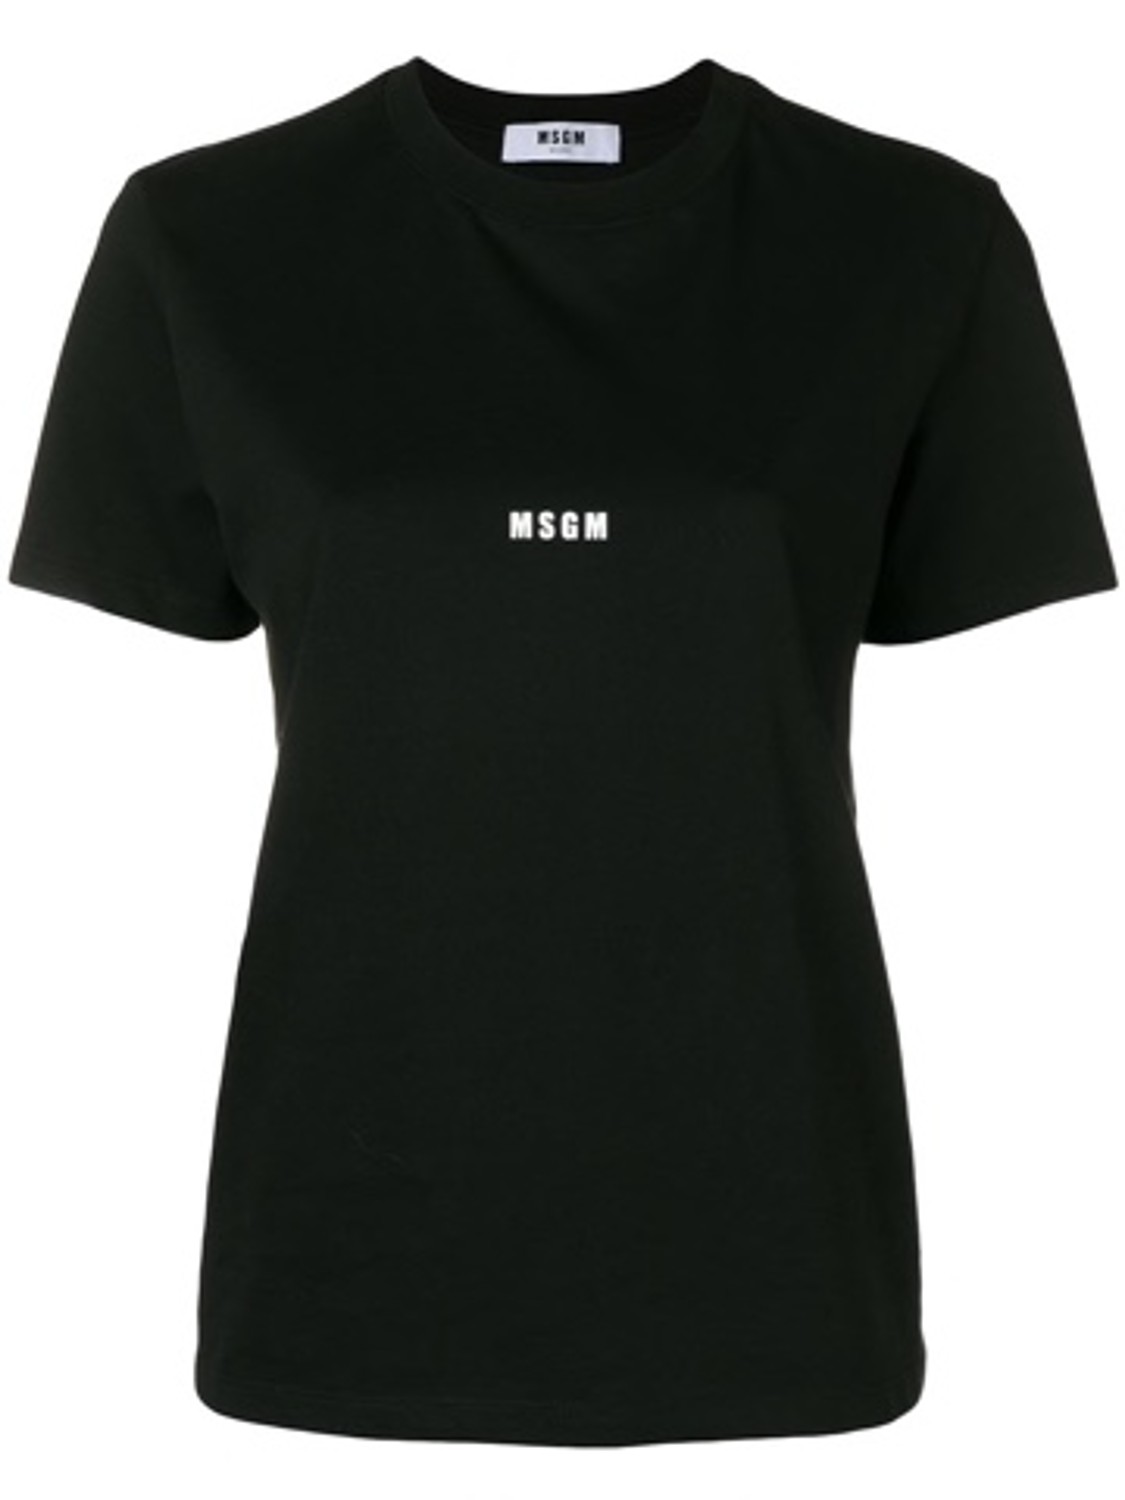 shop MSGM Saldi T-shirts: T-shirt MSGM, modello regolare, girocollo, manica corta, logo sul davanti.

Composizione: 100% cotone. number 1407